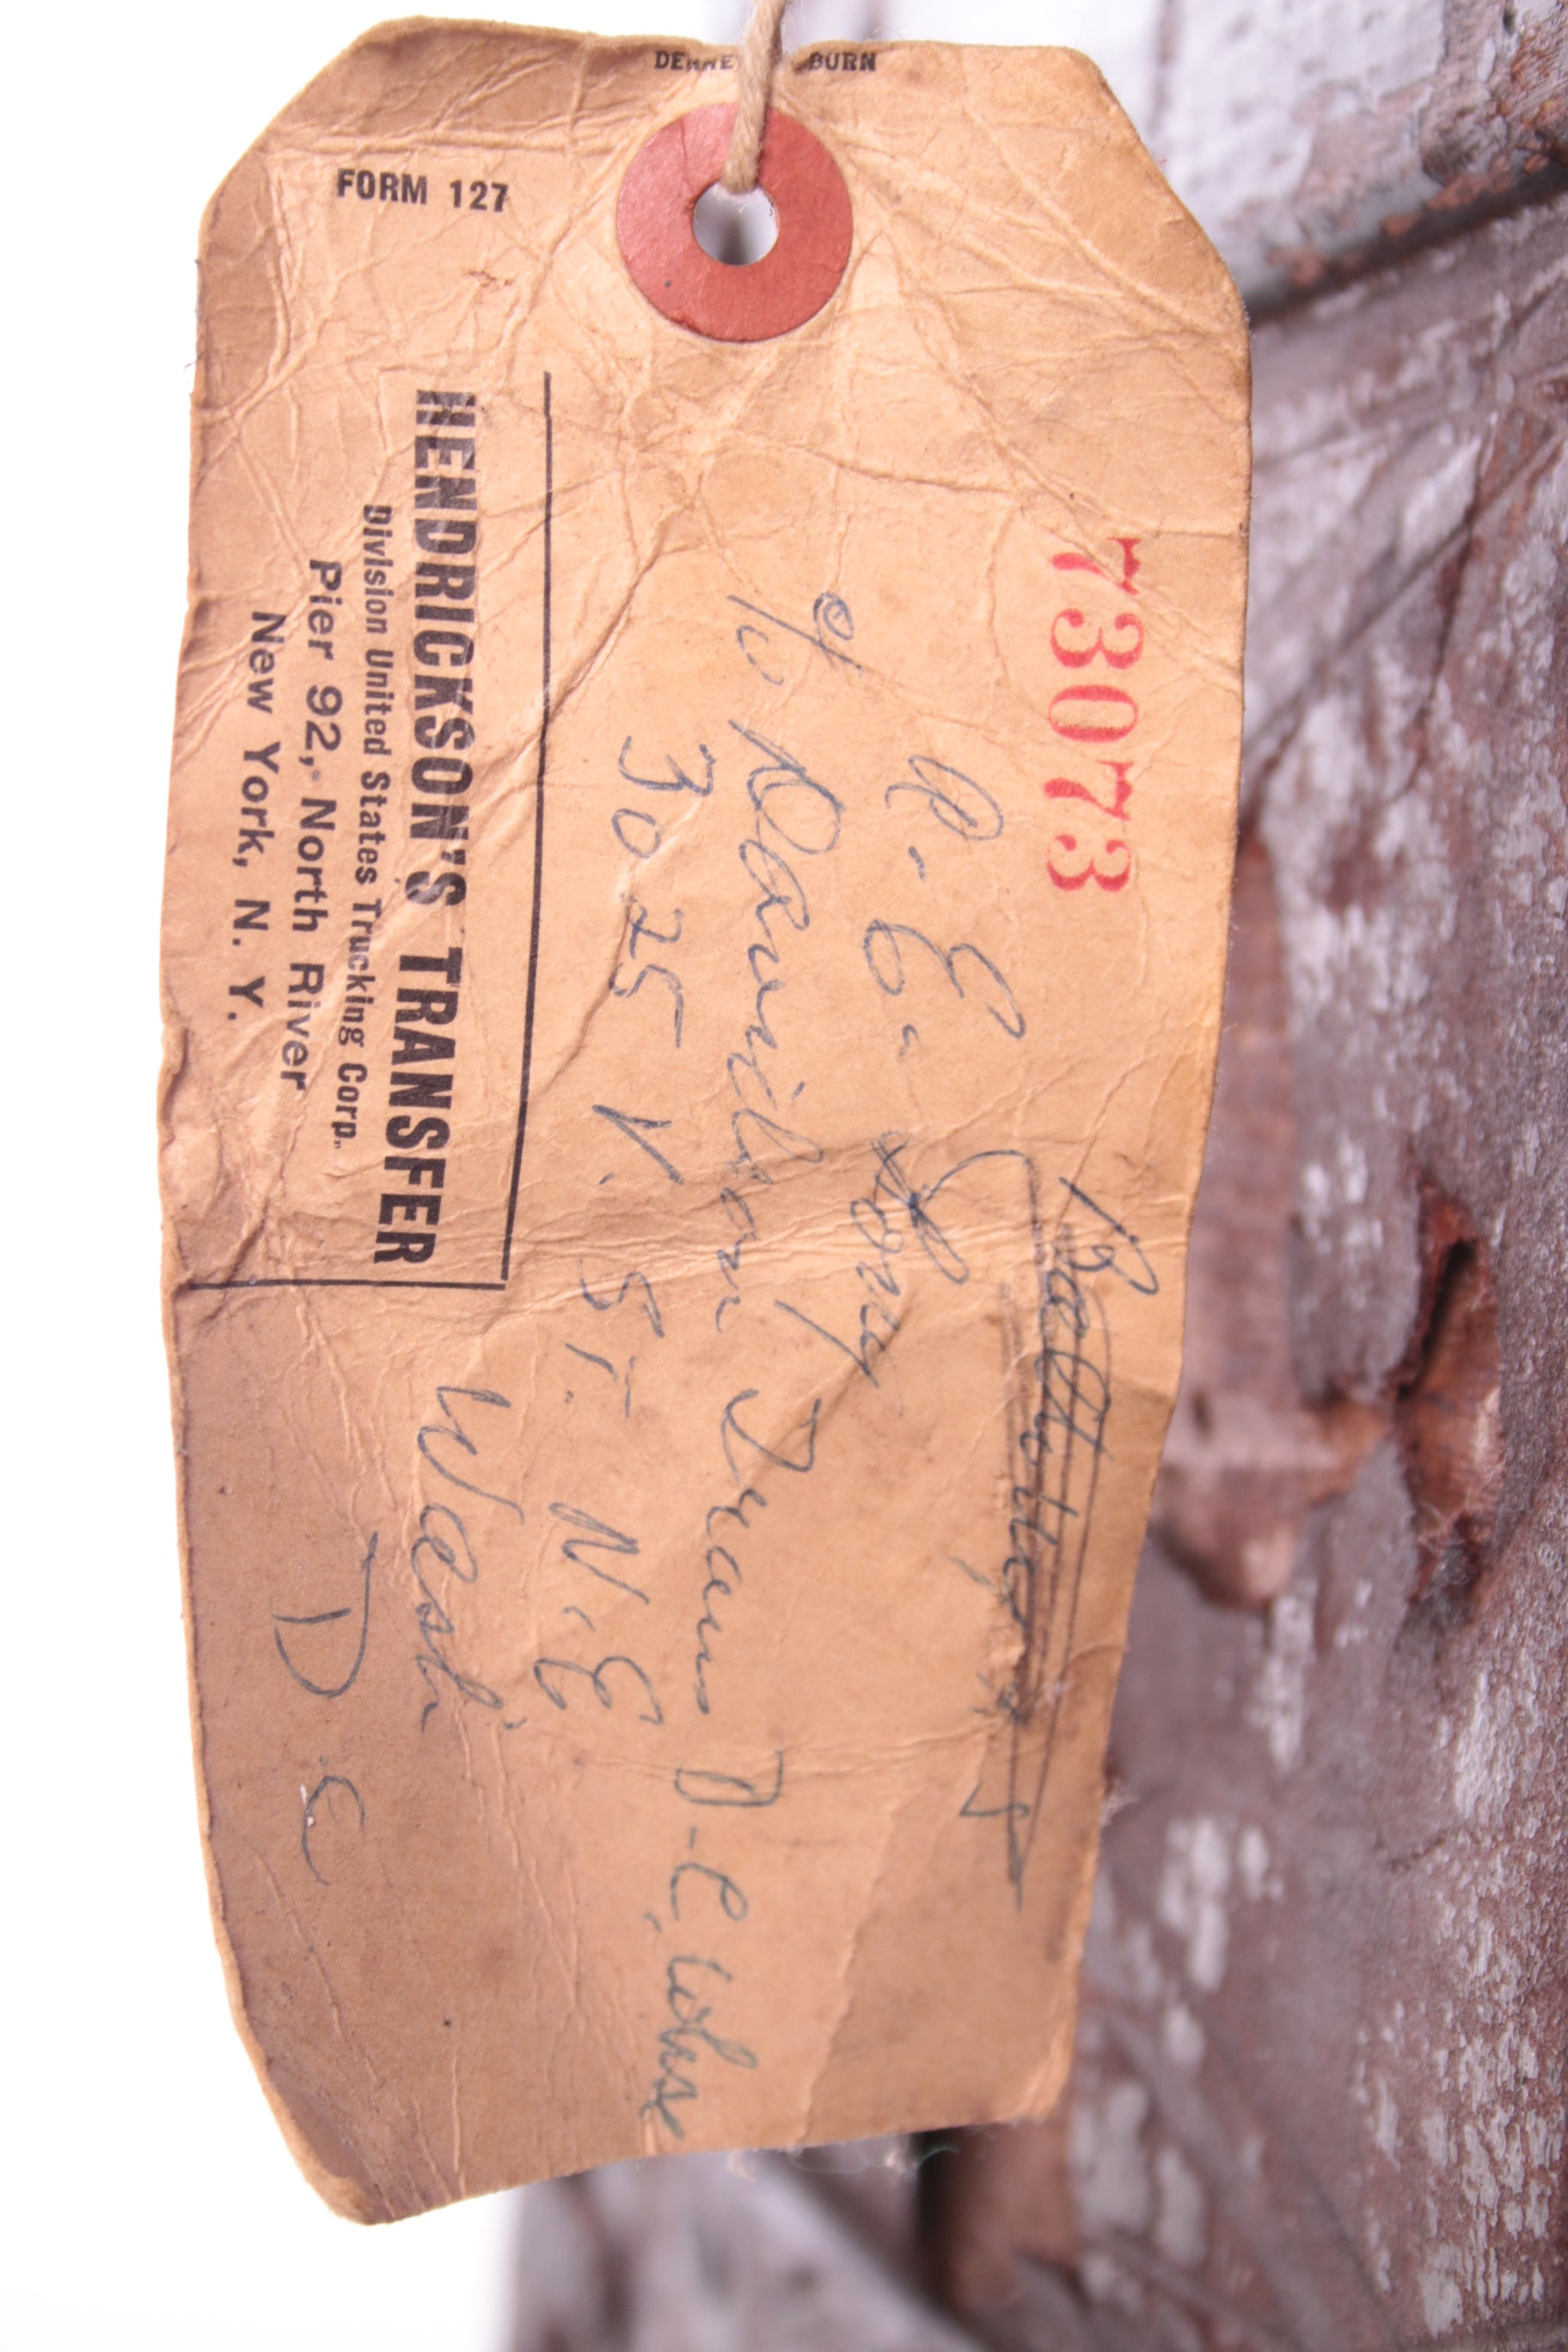 Zeer Oude hutkoffer van rond 1890 eeuw Henry Pollack Company,Texas detail label